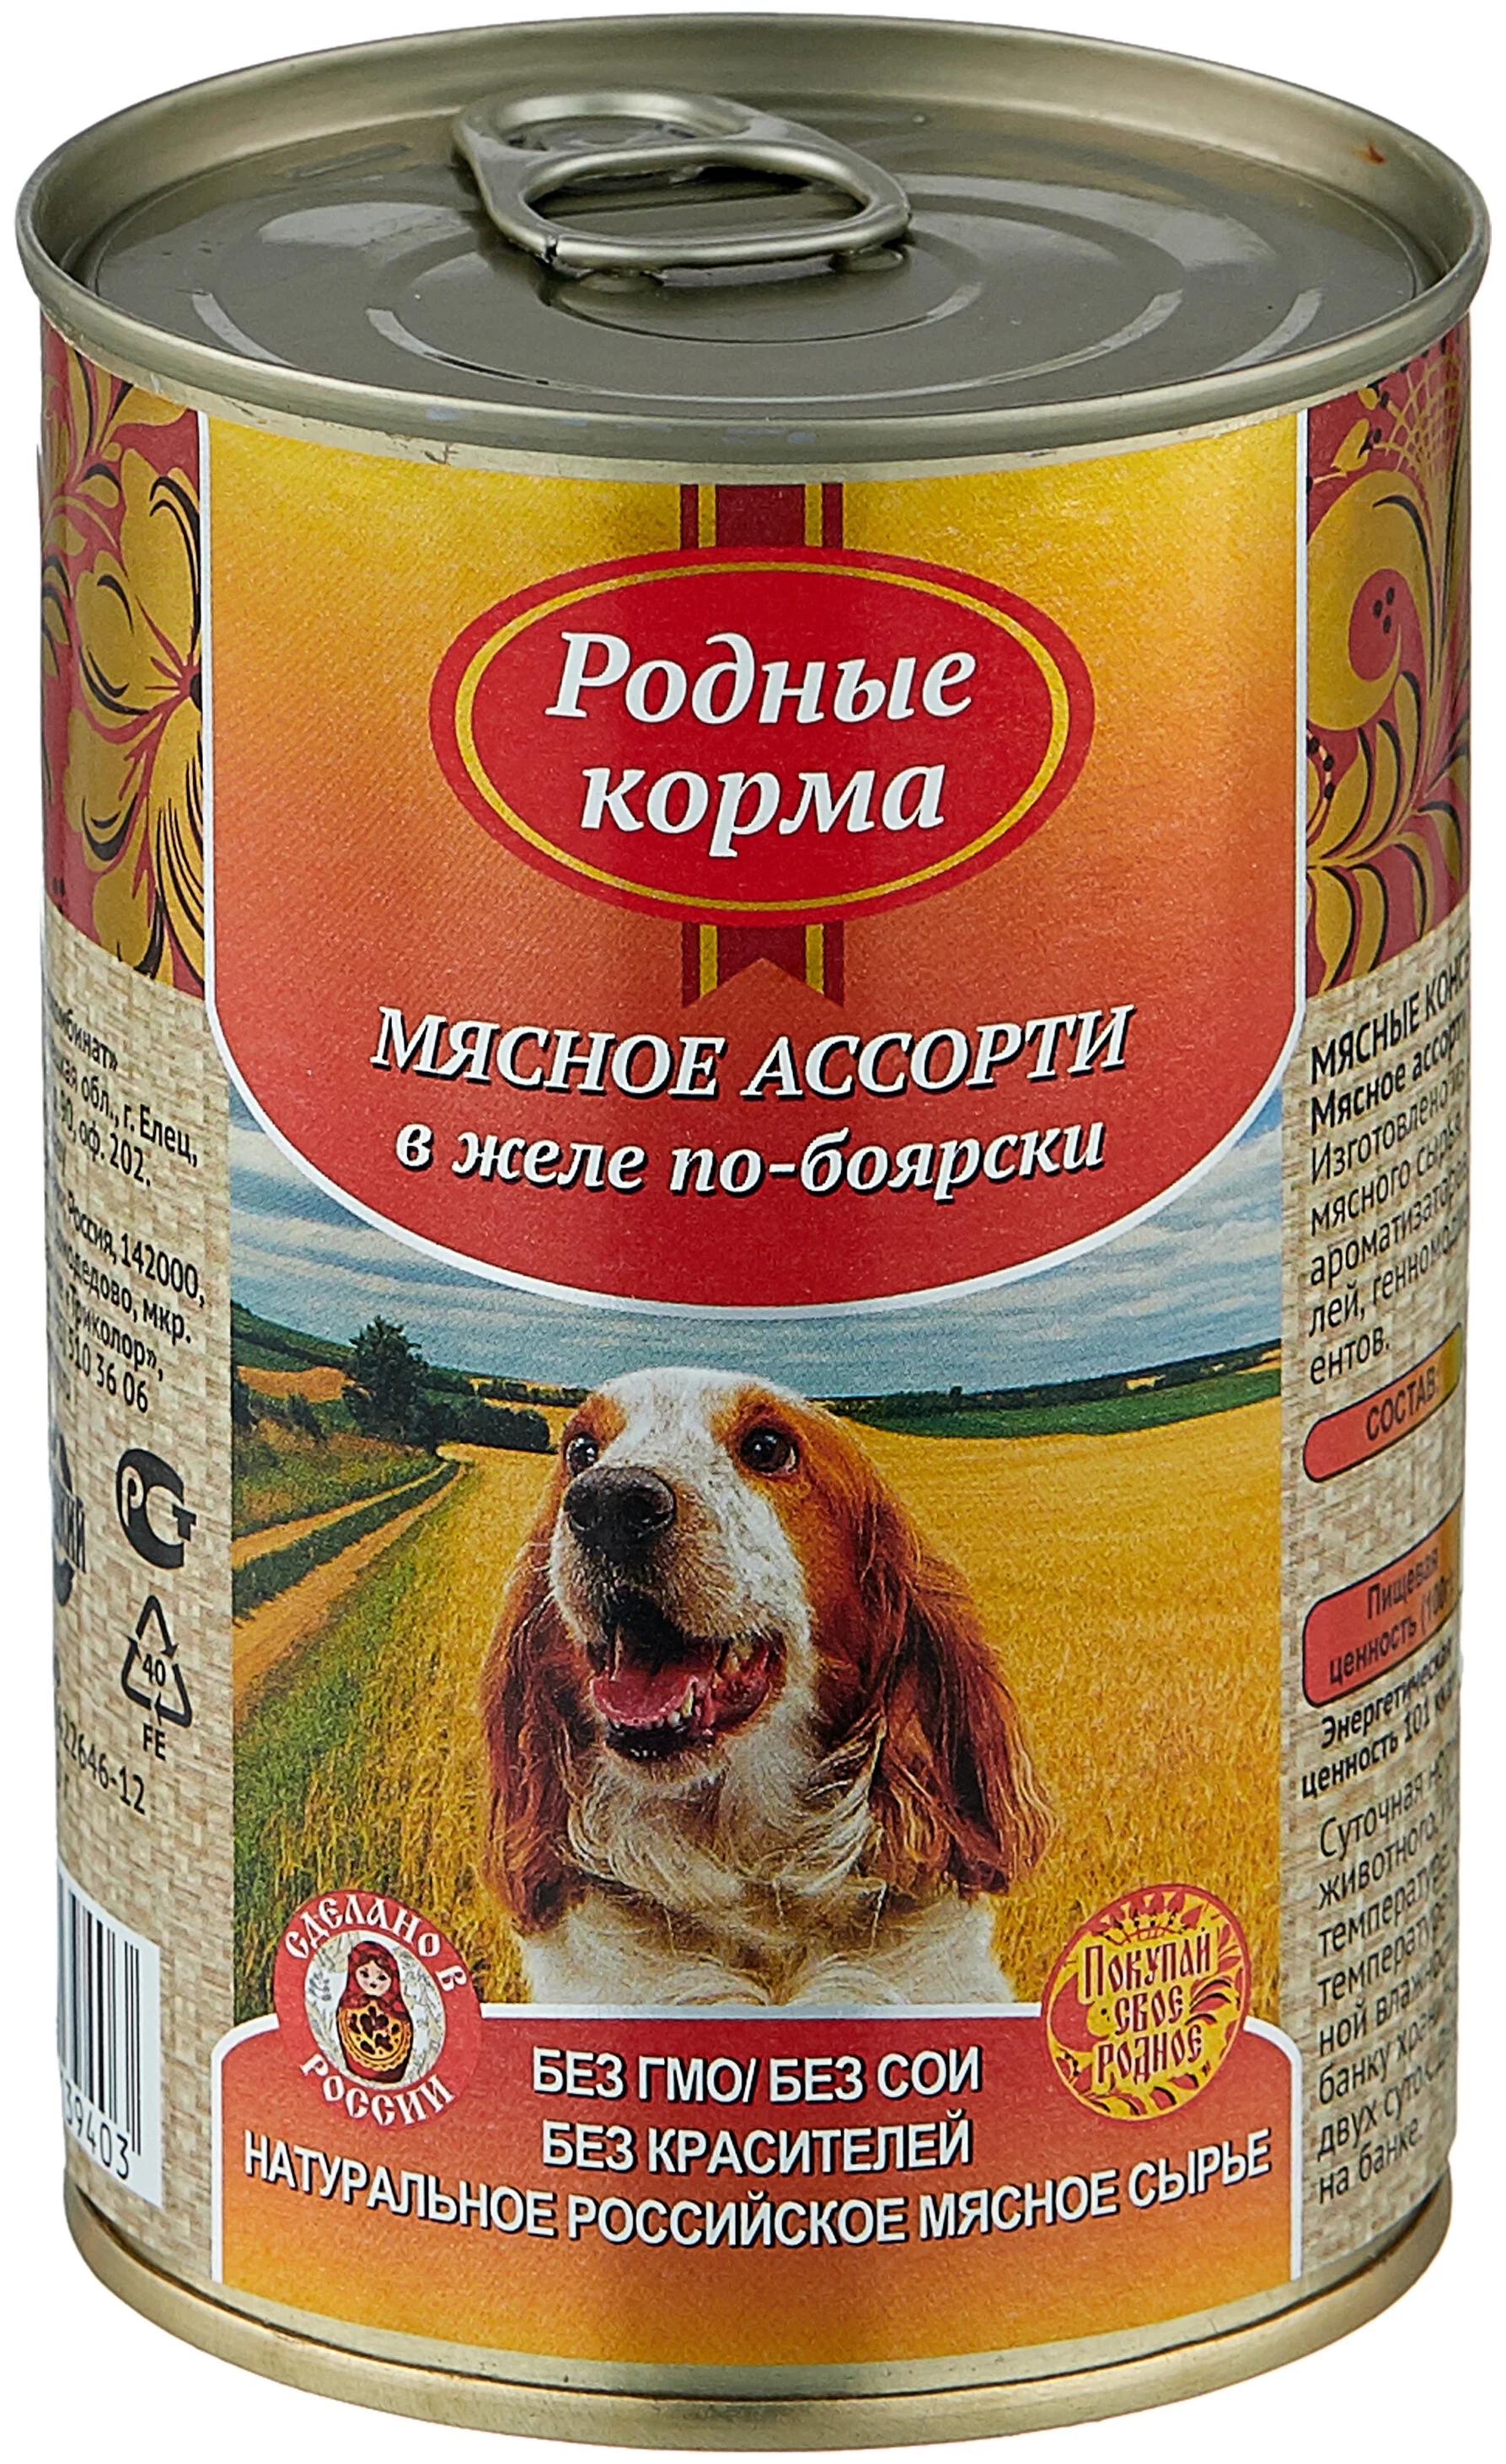 ПАК_9 РОДНЫЕ КОРМА 410 г консервы для собак мясное ассорти в желе по-боярски 1х9